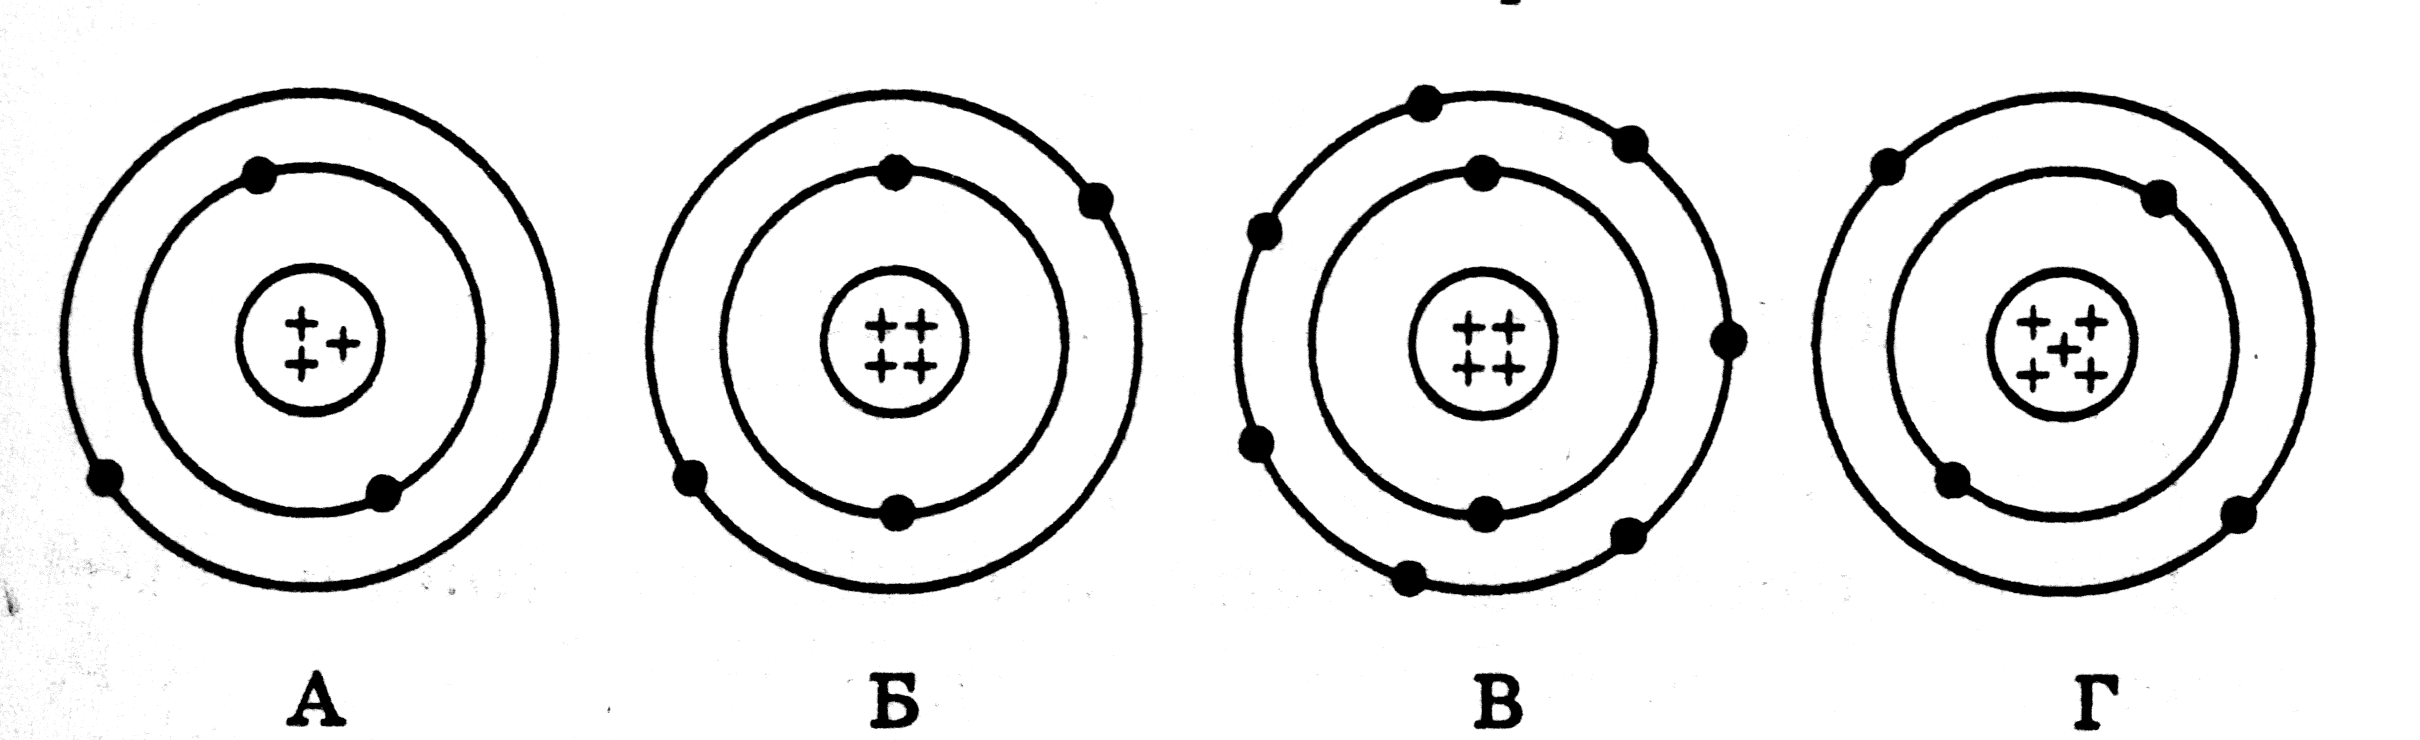 На рисунке изображены схемы четырех атомов черные точки электроны какая схема соответствует атому he